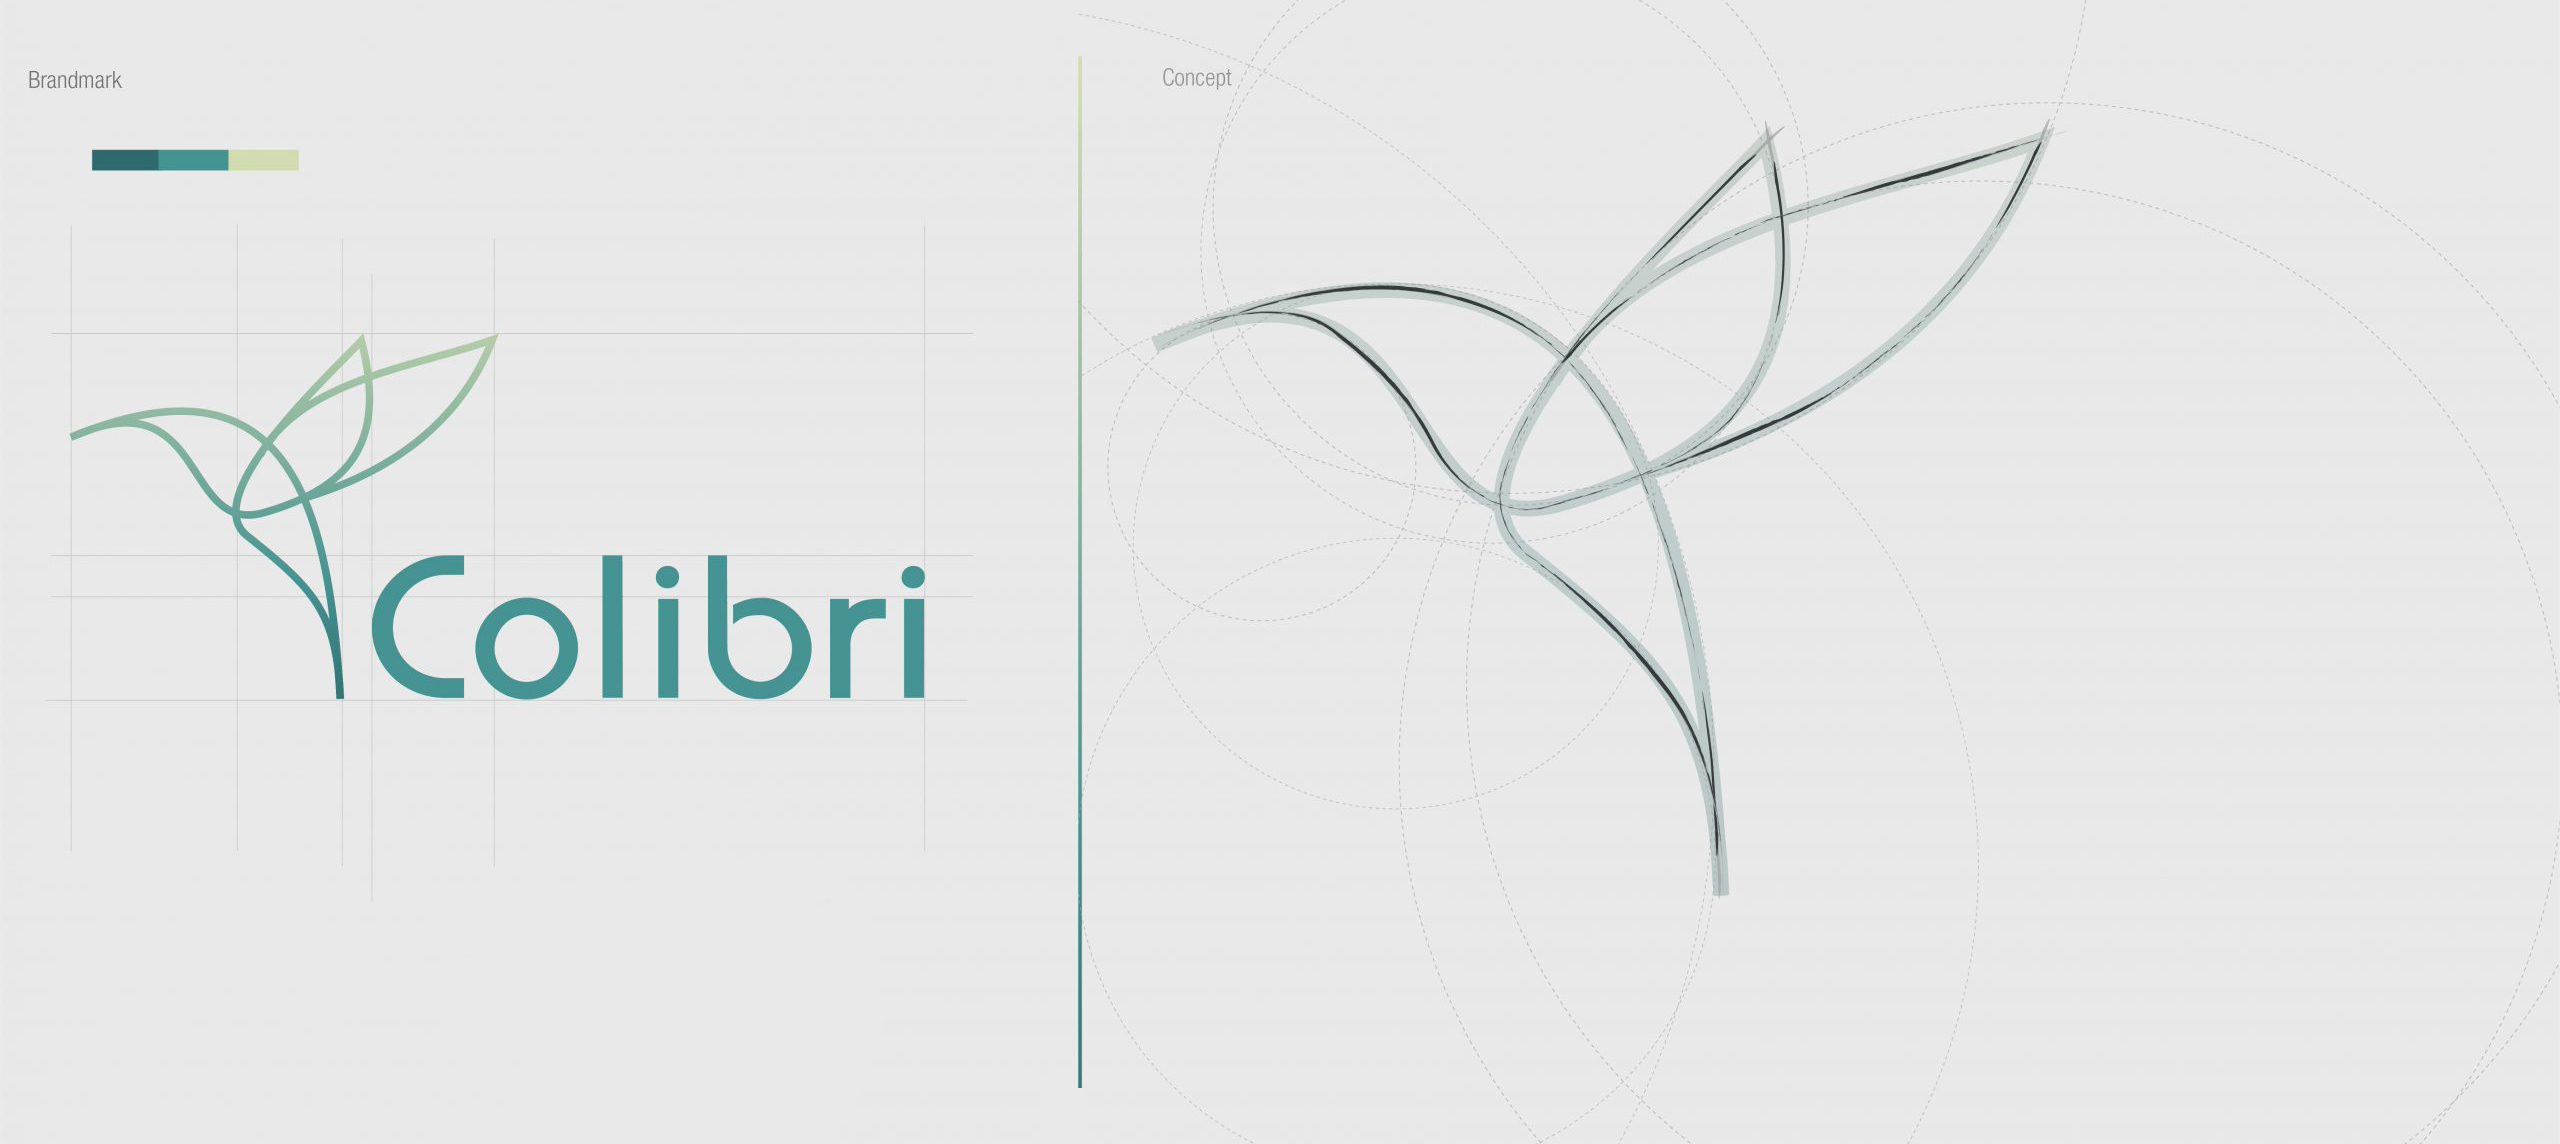 colibri_web_concept-scaled-small